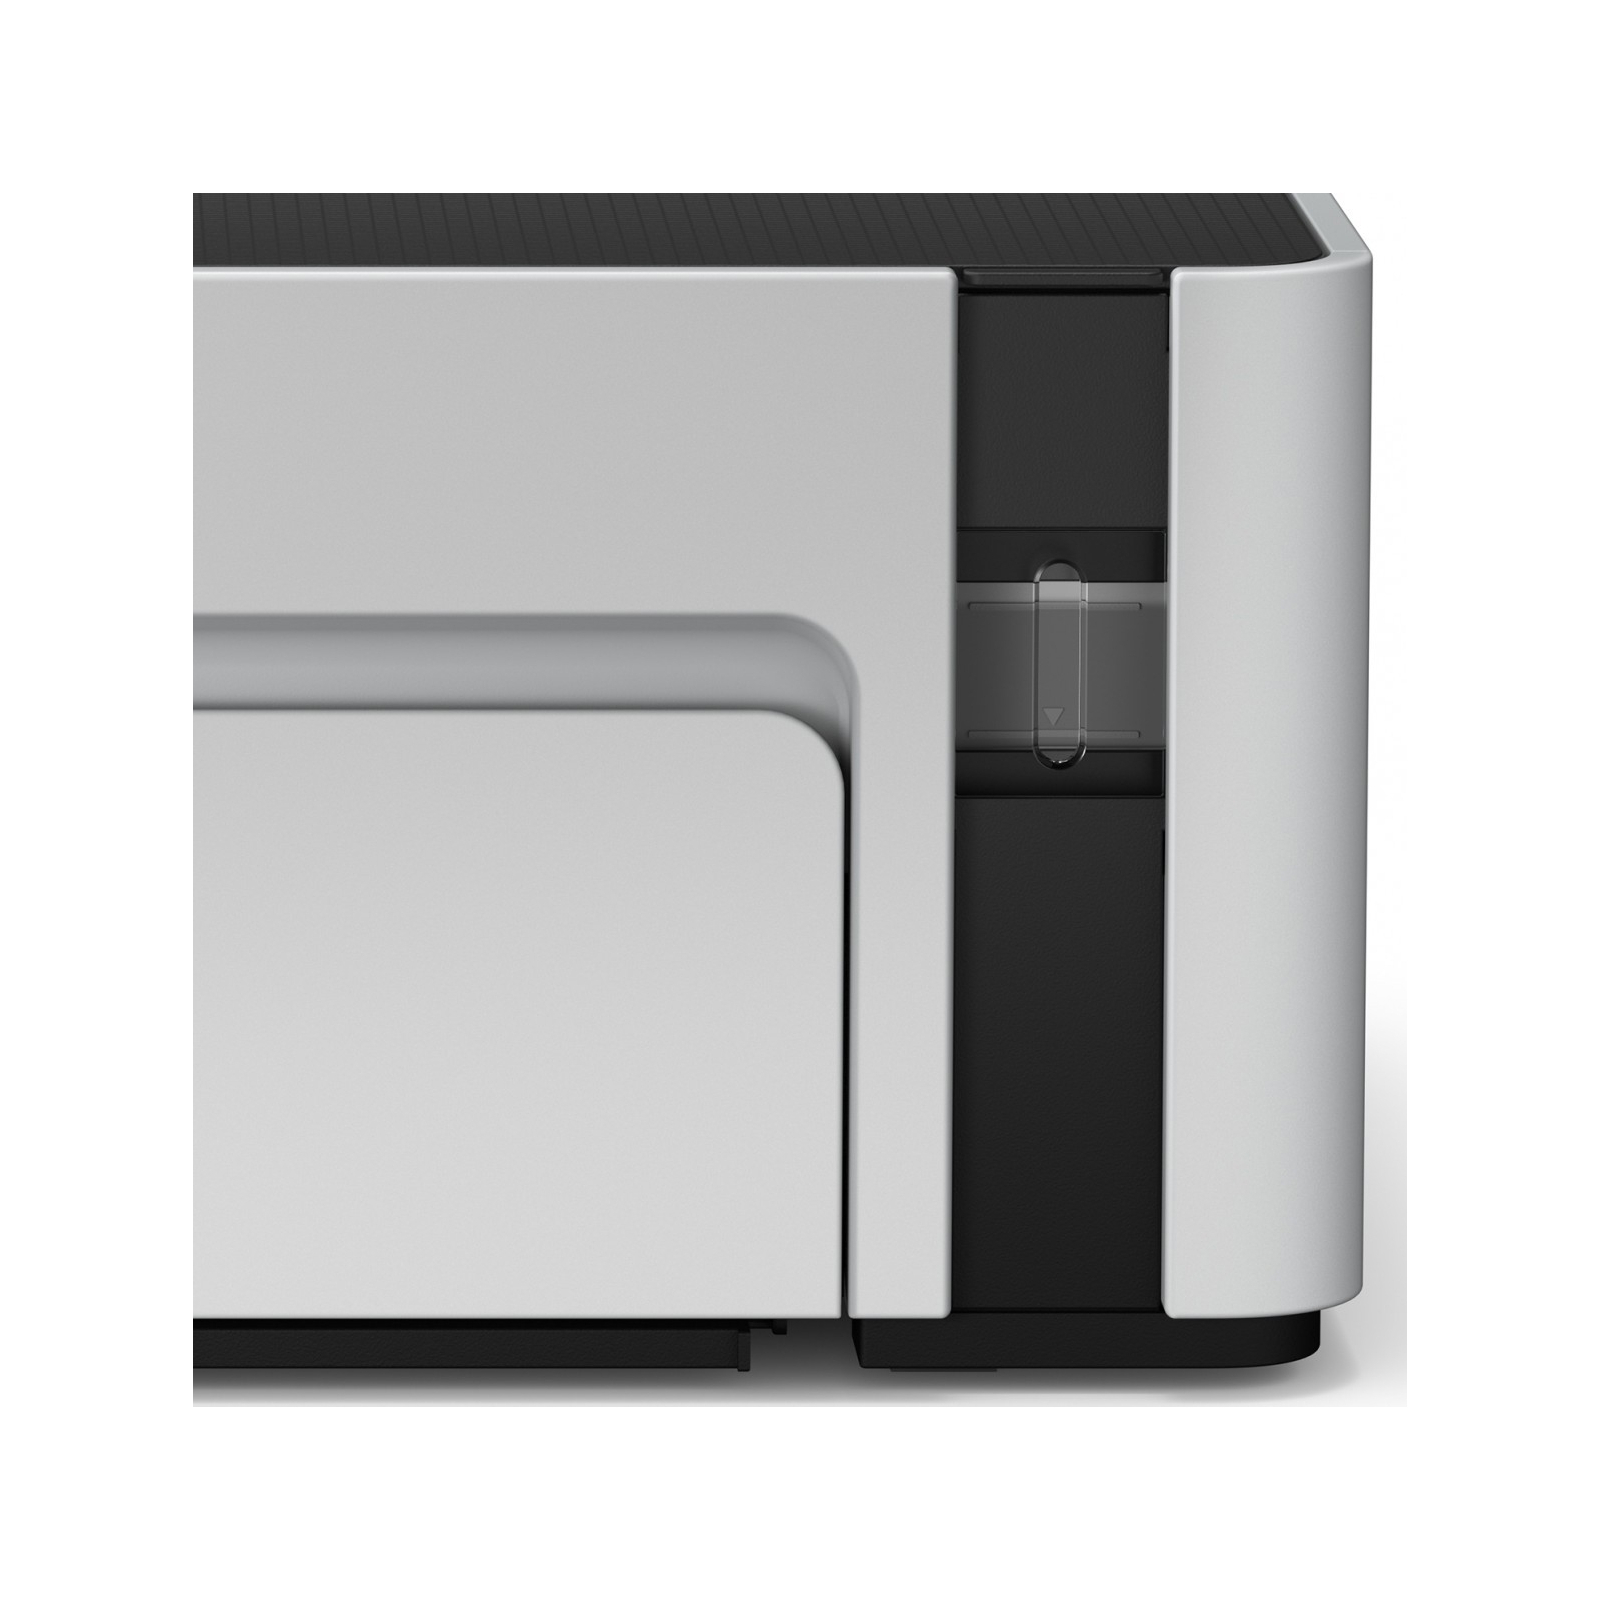 Струменевий принтер Epson M1120 с WiFi (C11CG96405) зображення 4